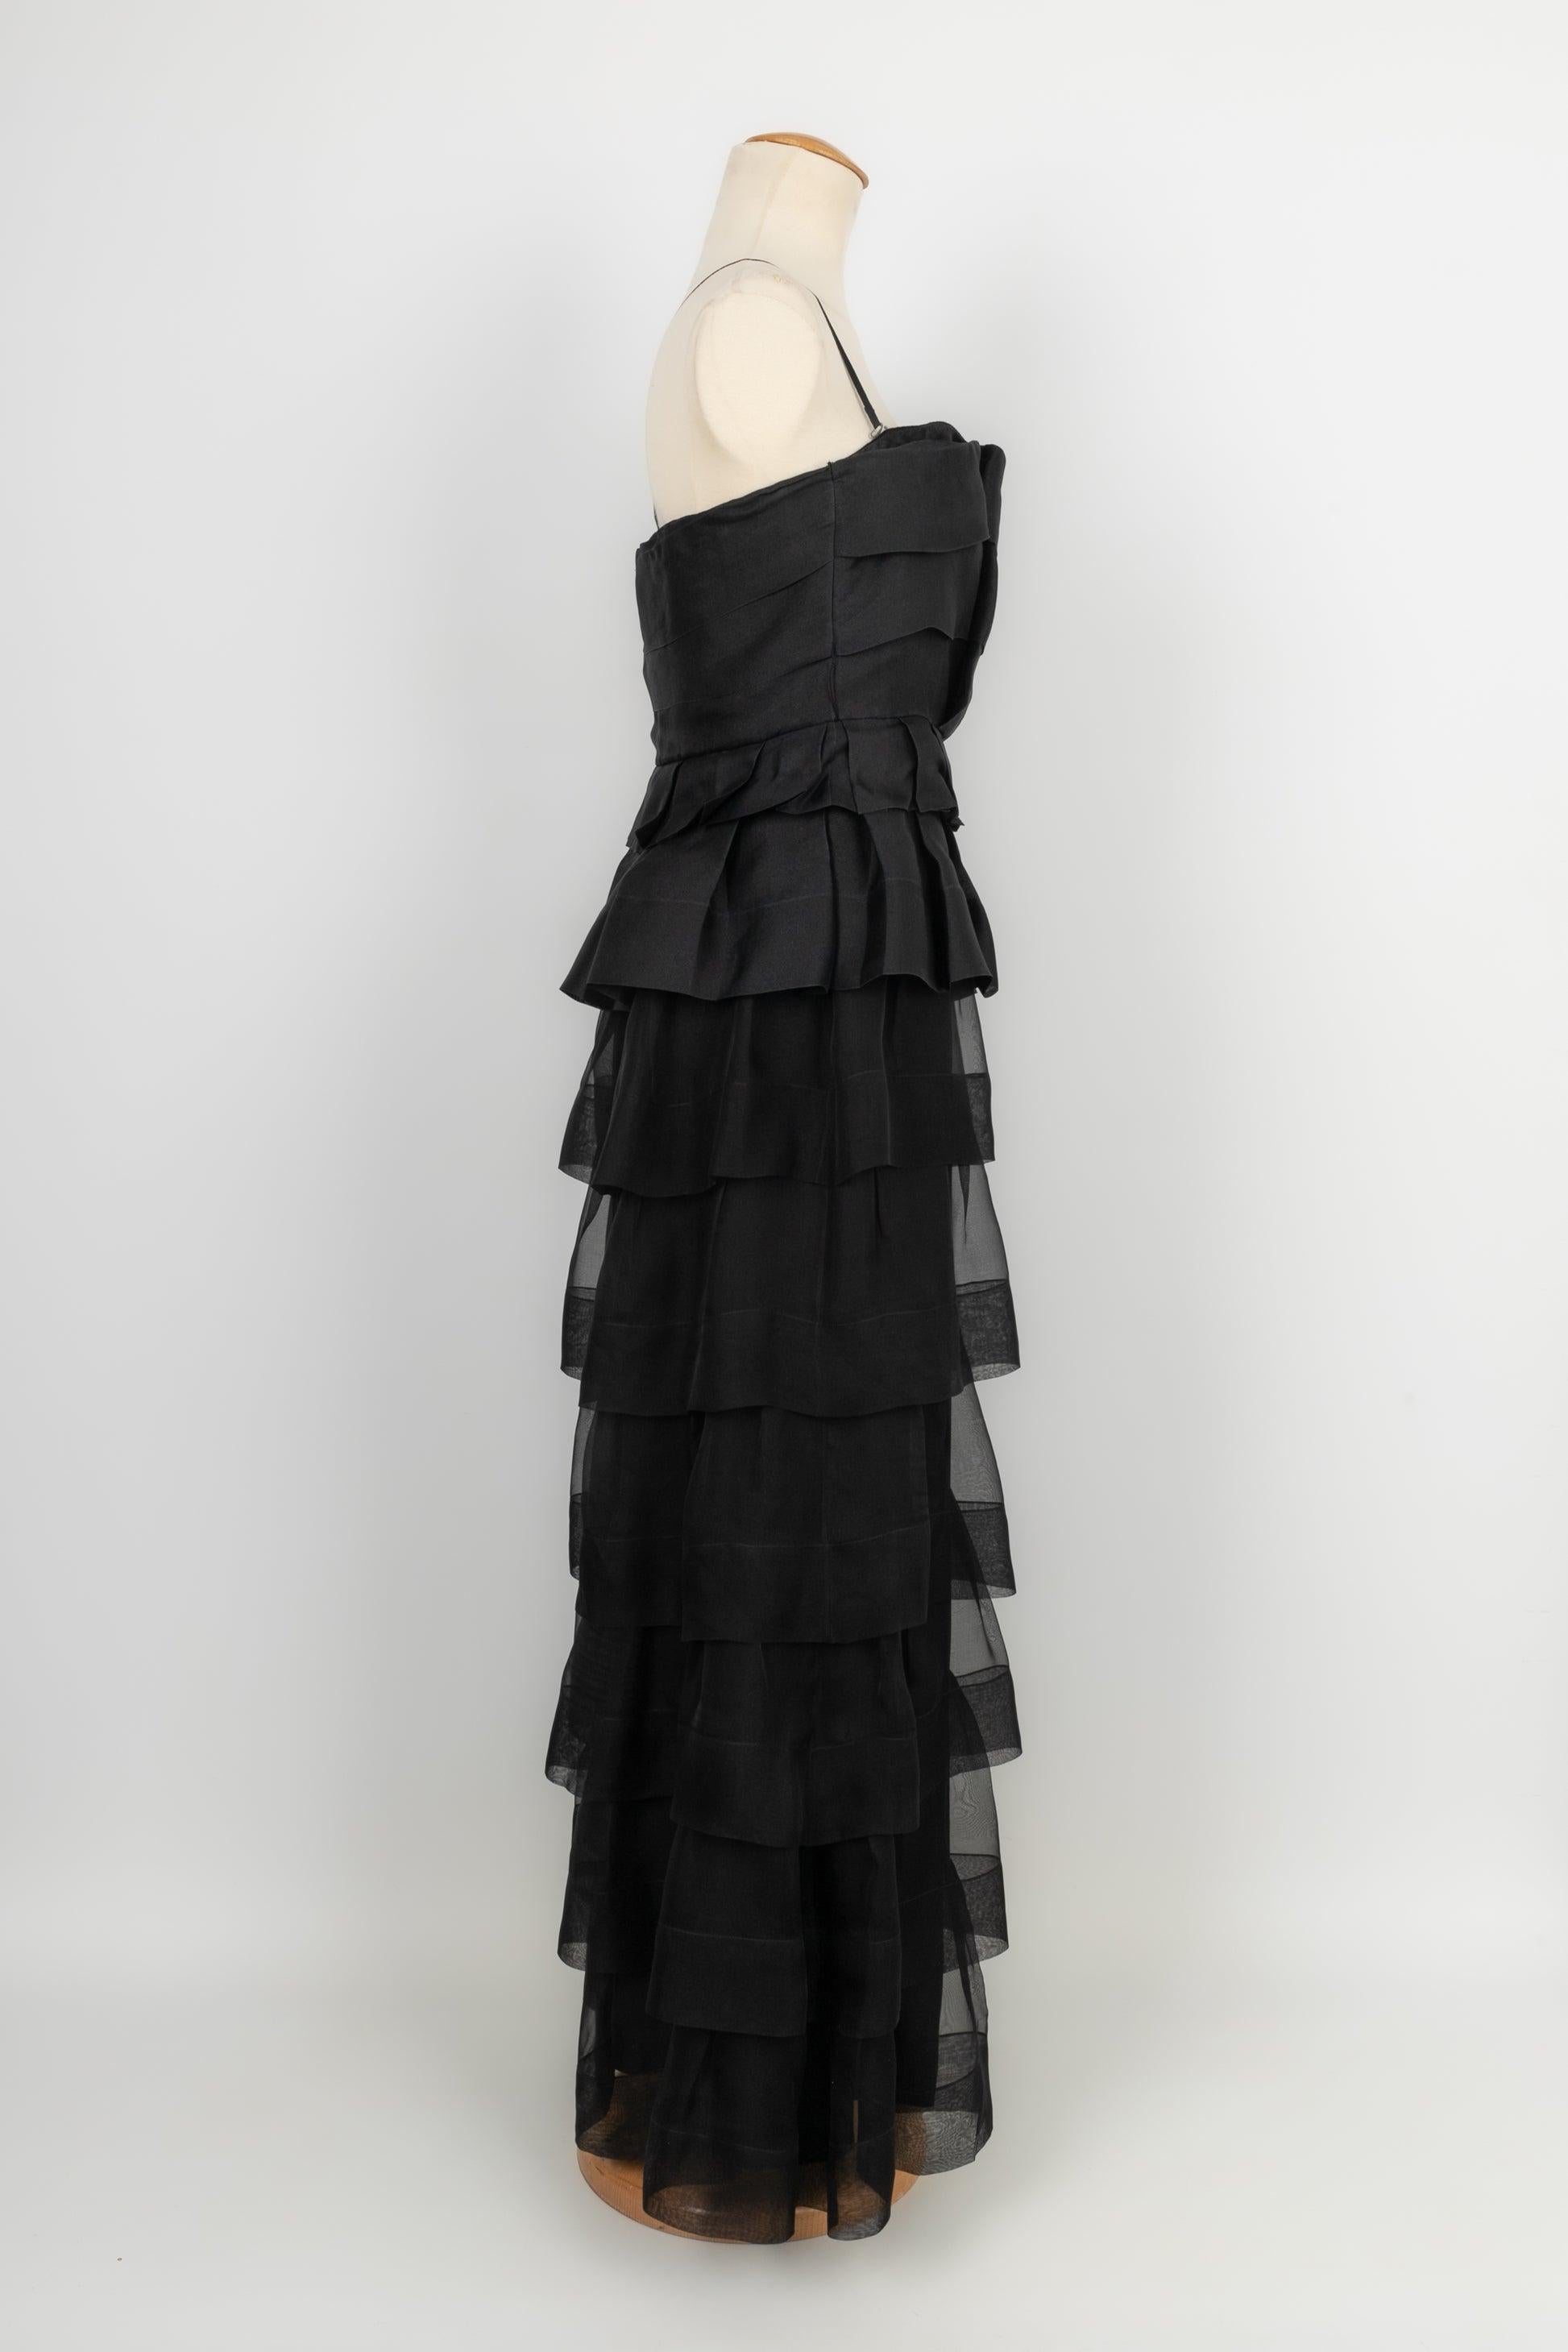 Women's Christian Dior Black Silk Flounced Bustier Dress 42FR, 2009